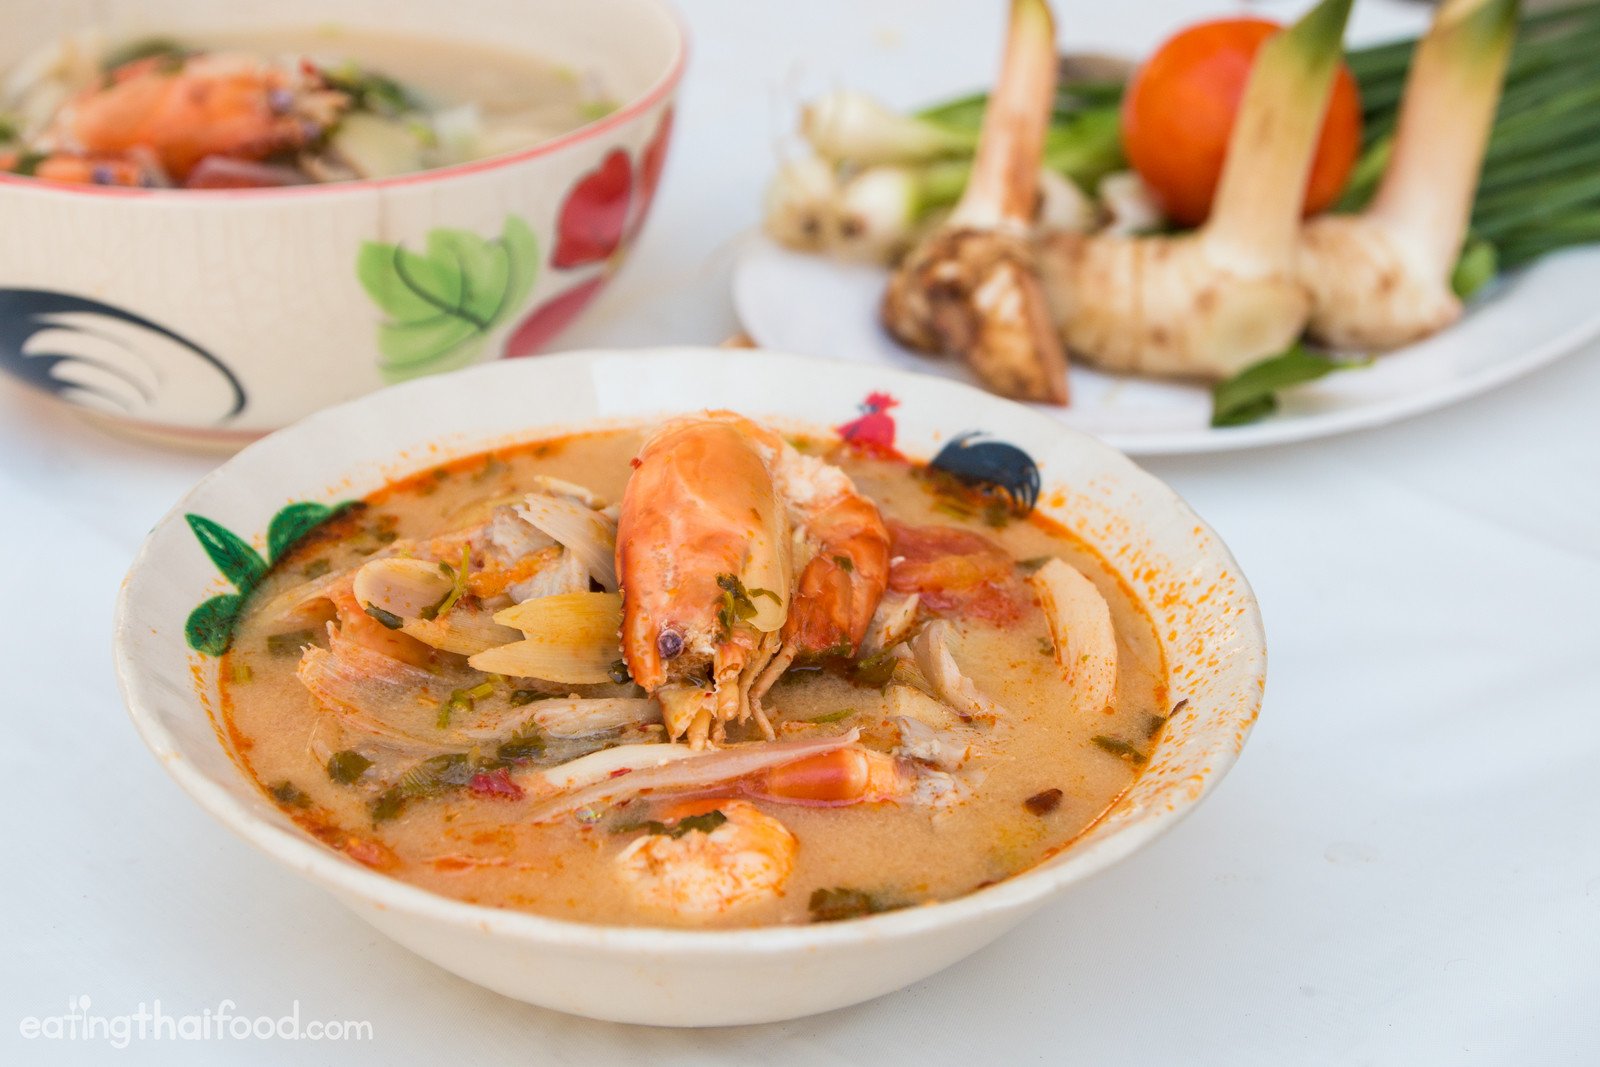 Острый тайский суп с креветками (tom yum) - вкусные простые рецепты с фото пошагово на каждый день! idealrecept.com